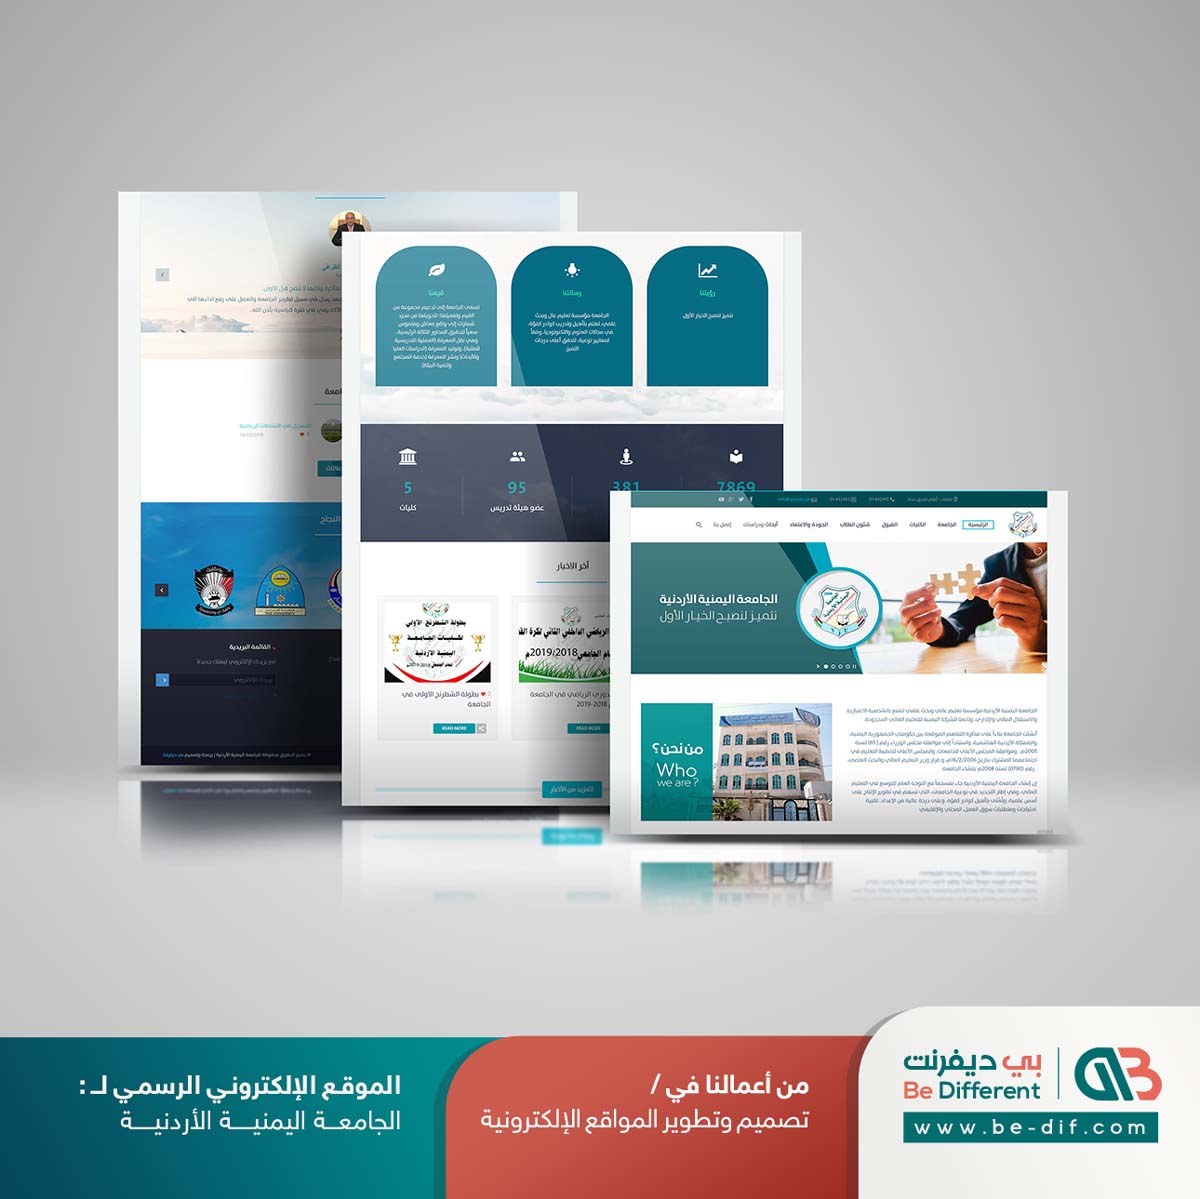 تصميم موقع جامعة اليمنية الاردنية من شركة بي ديفرنت تصميم موقع ويب - نظام التعليم الالكتروني عن بعد